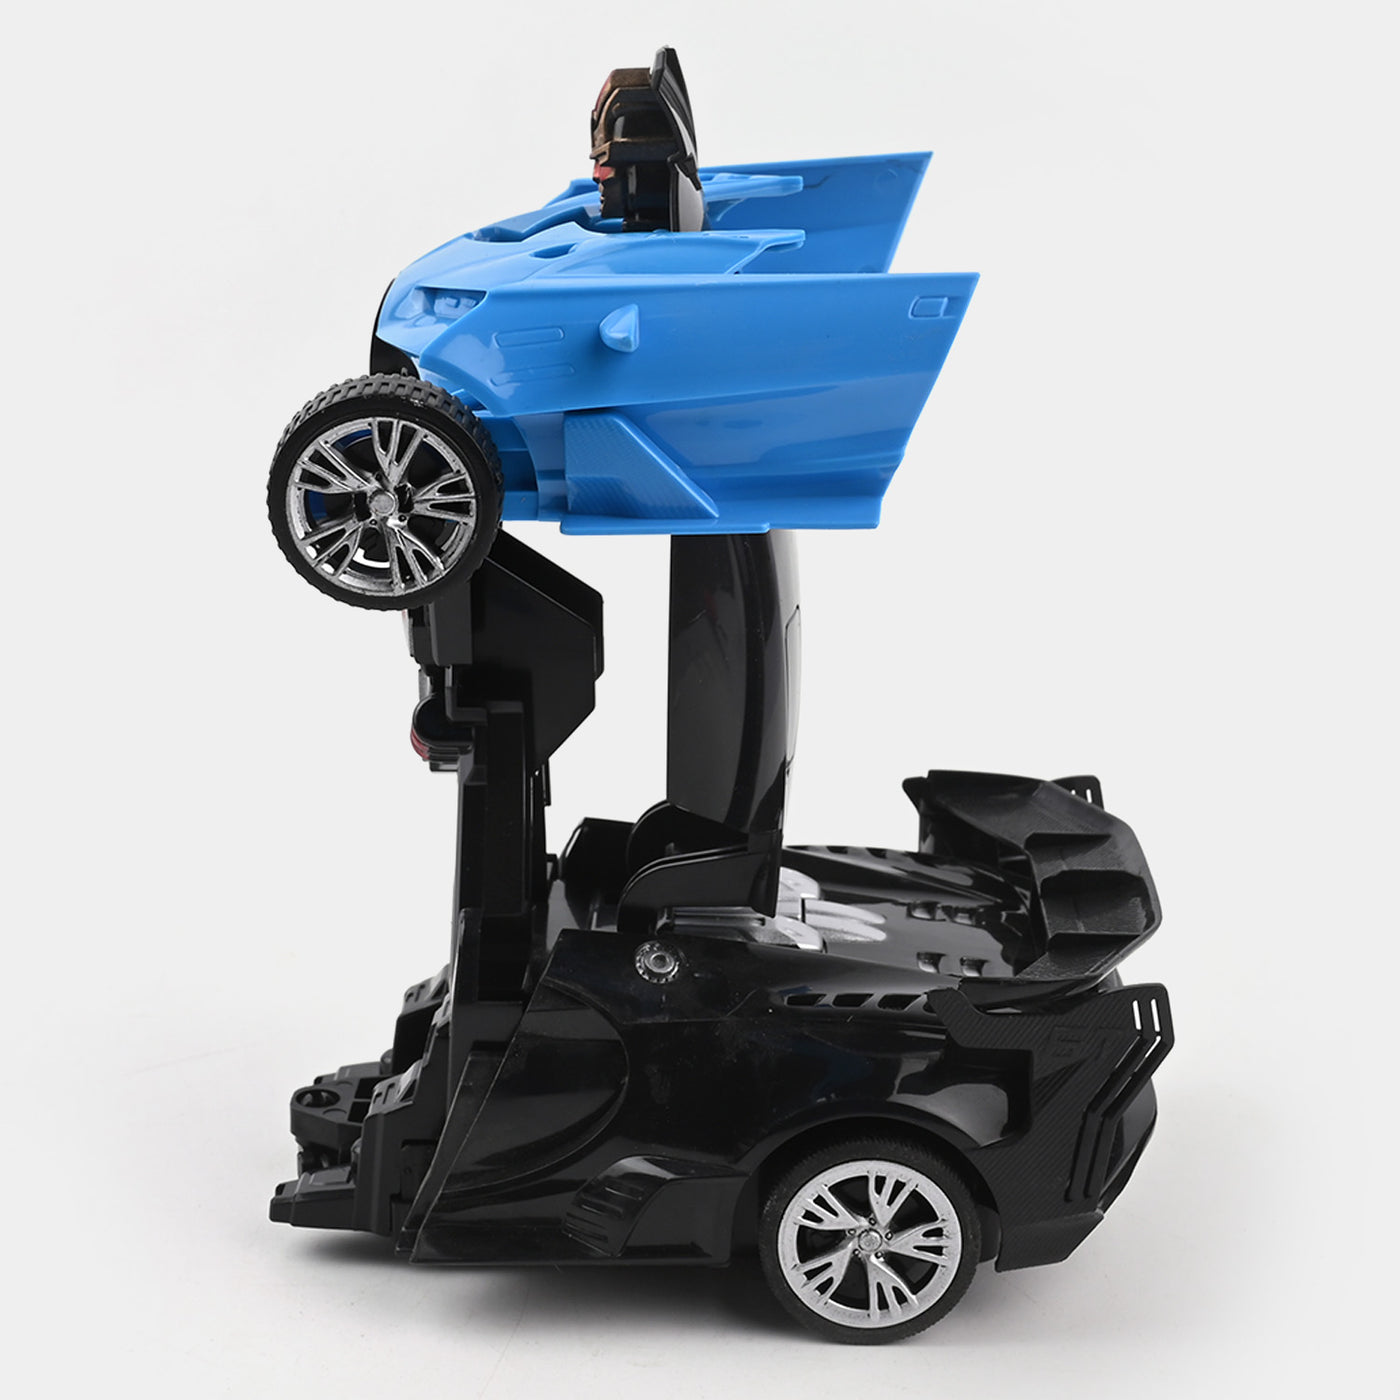 Remote Control Deformation Model Car For Kids